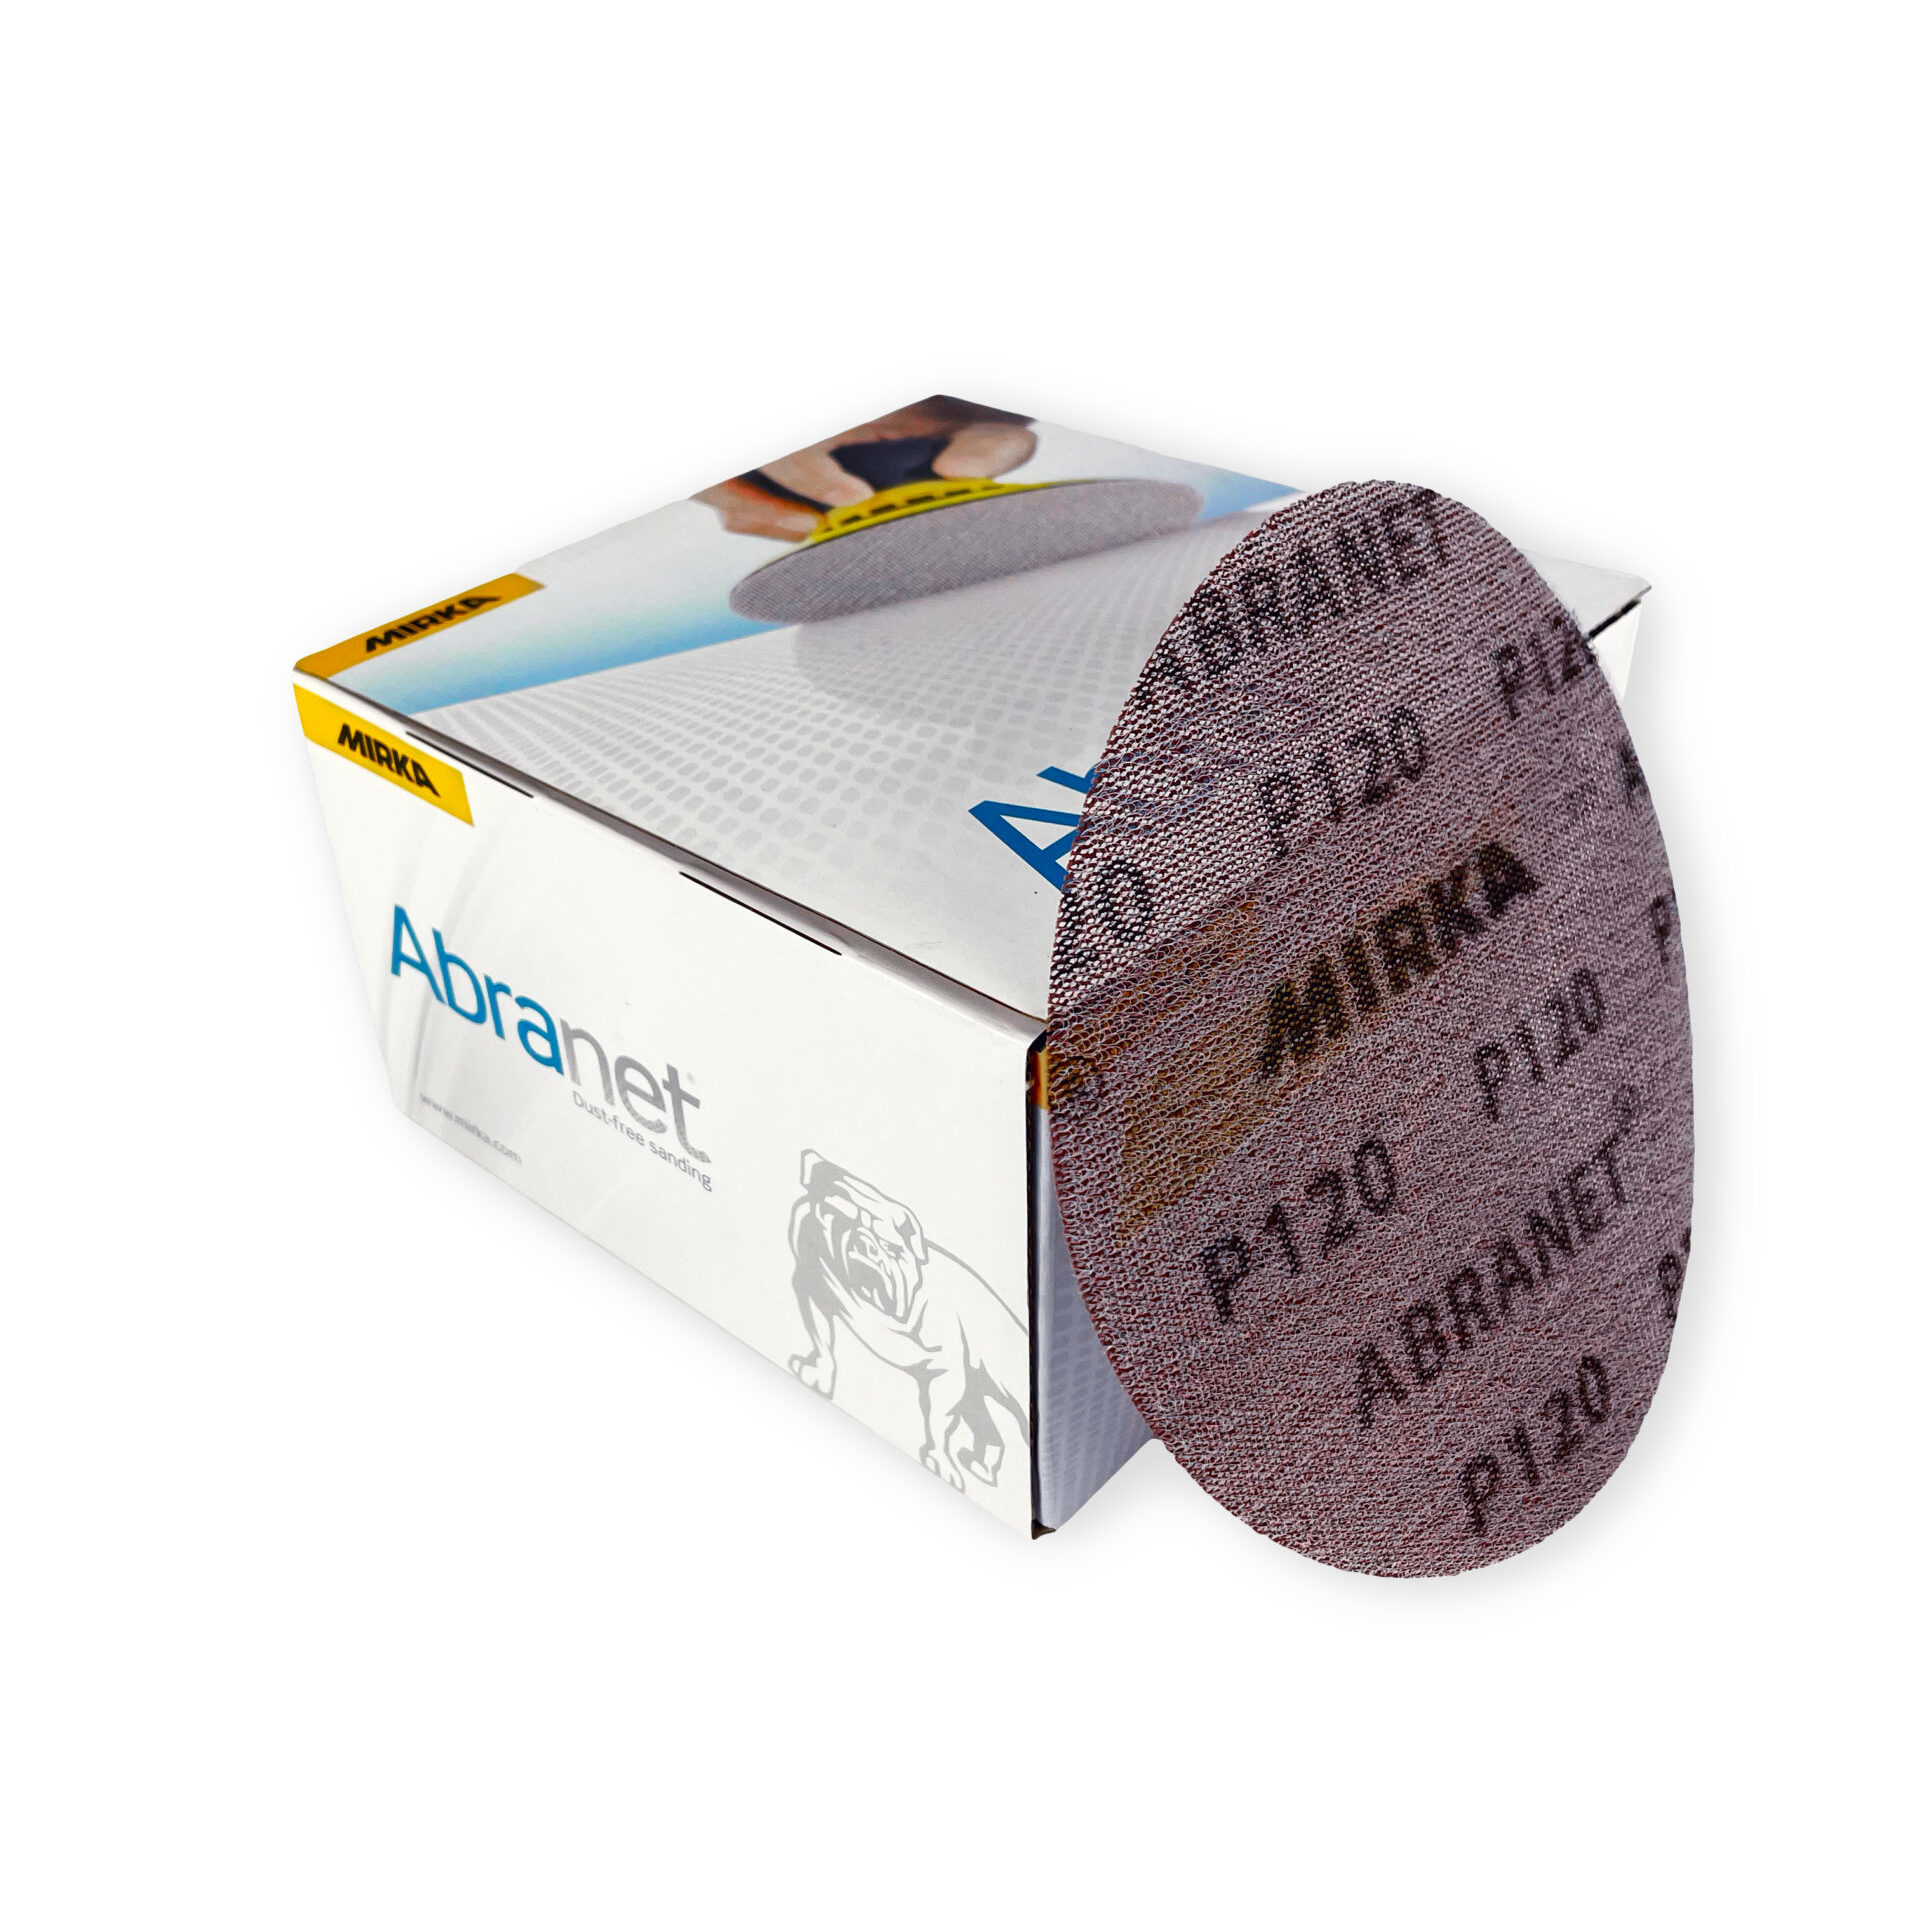 Mirka Abranet 6 Sanding Discs - Superclear® Epoxy Systems